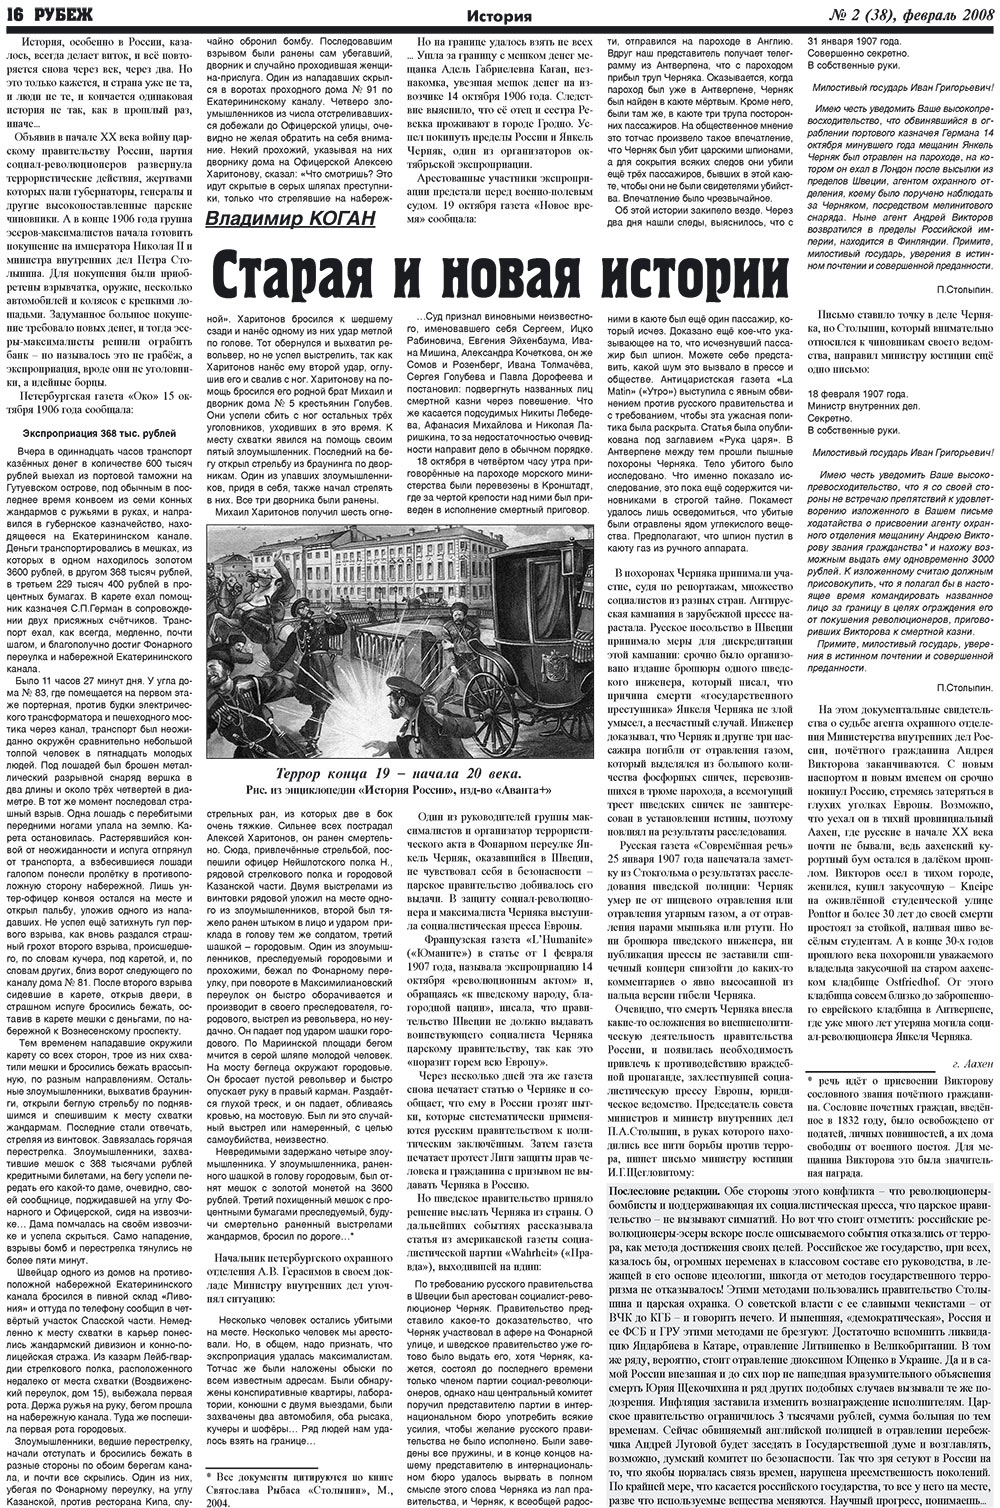 Рубеж (газета). 2008 год, номер 2, стр. 16